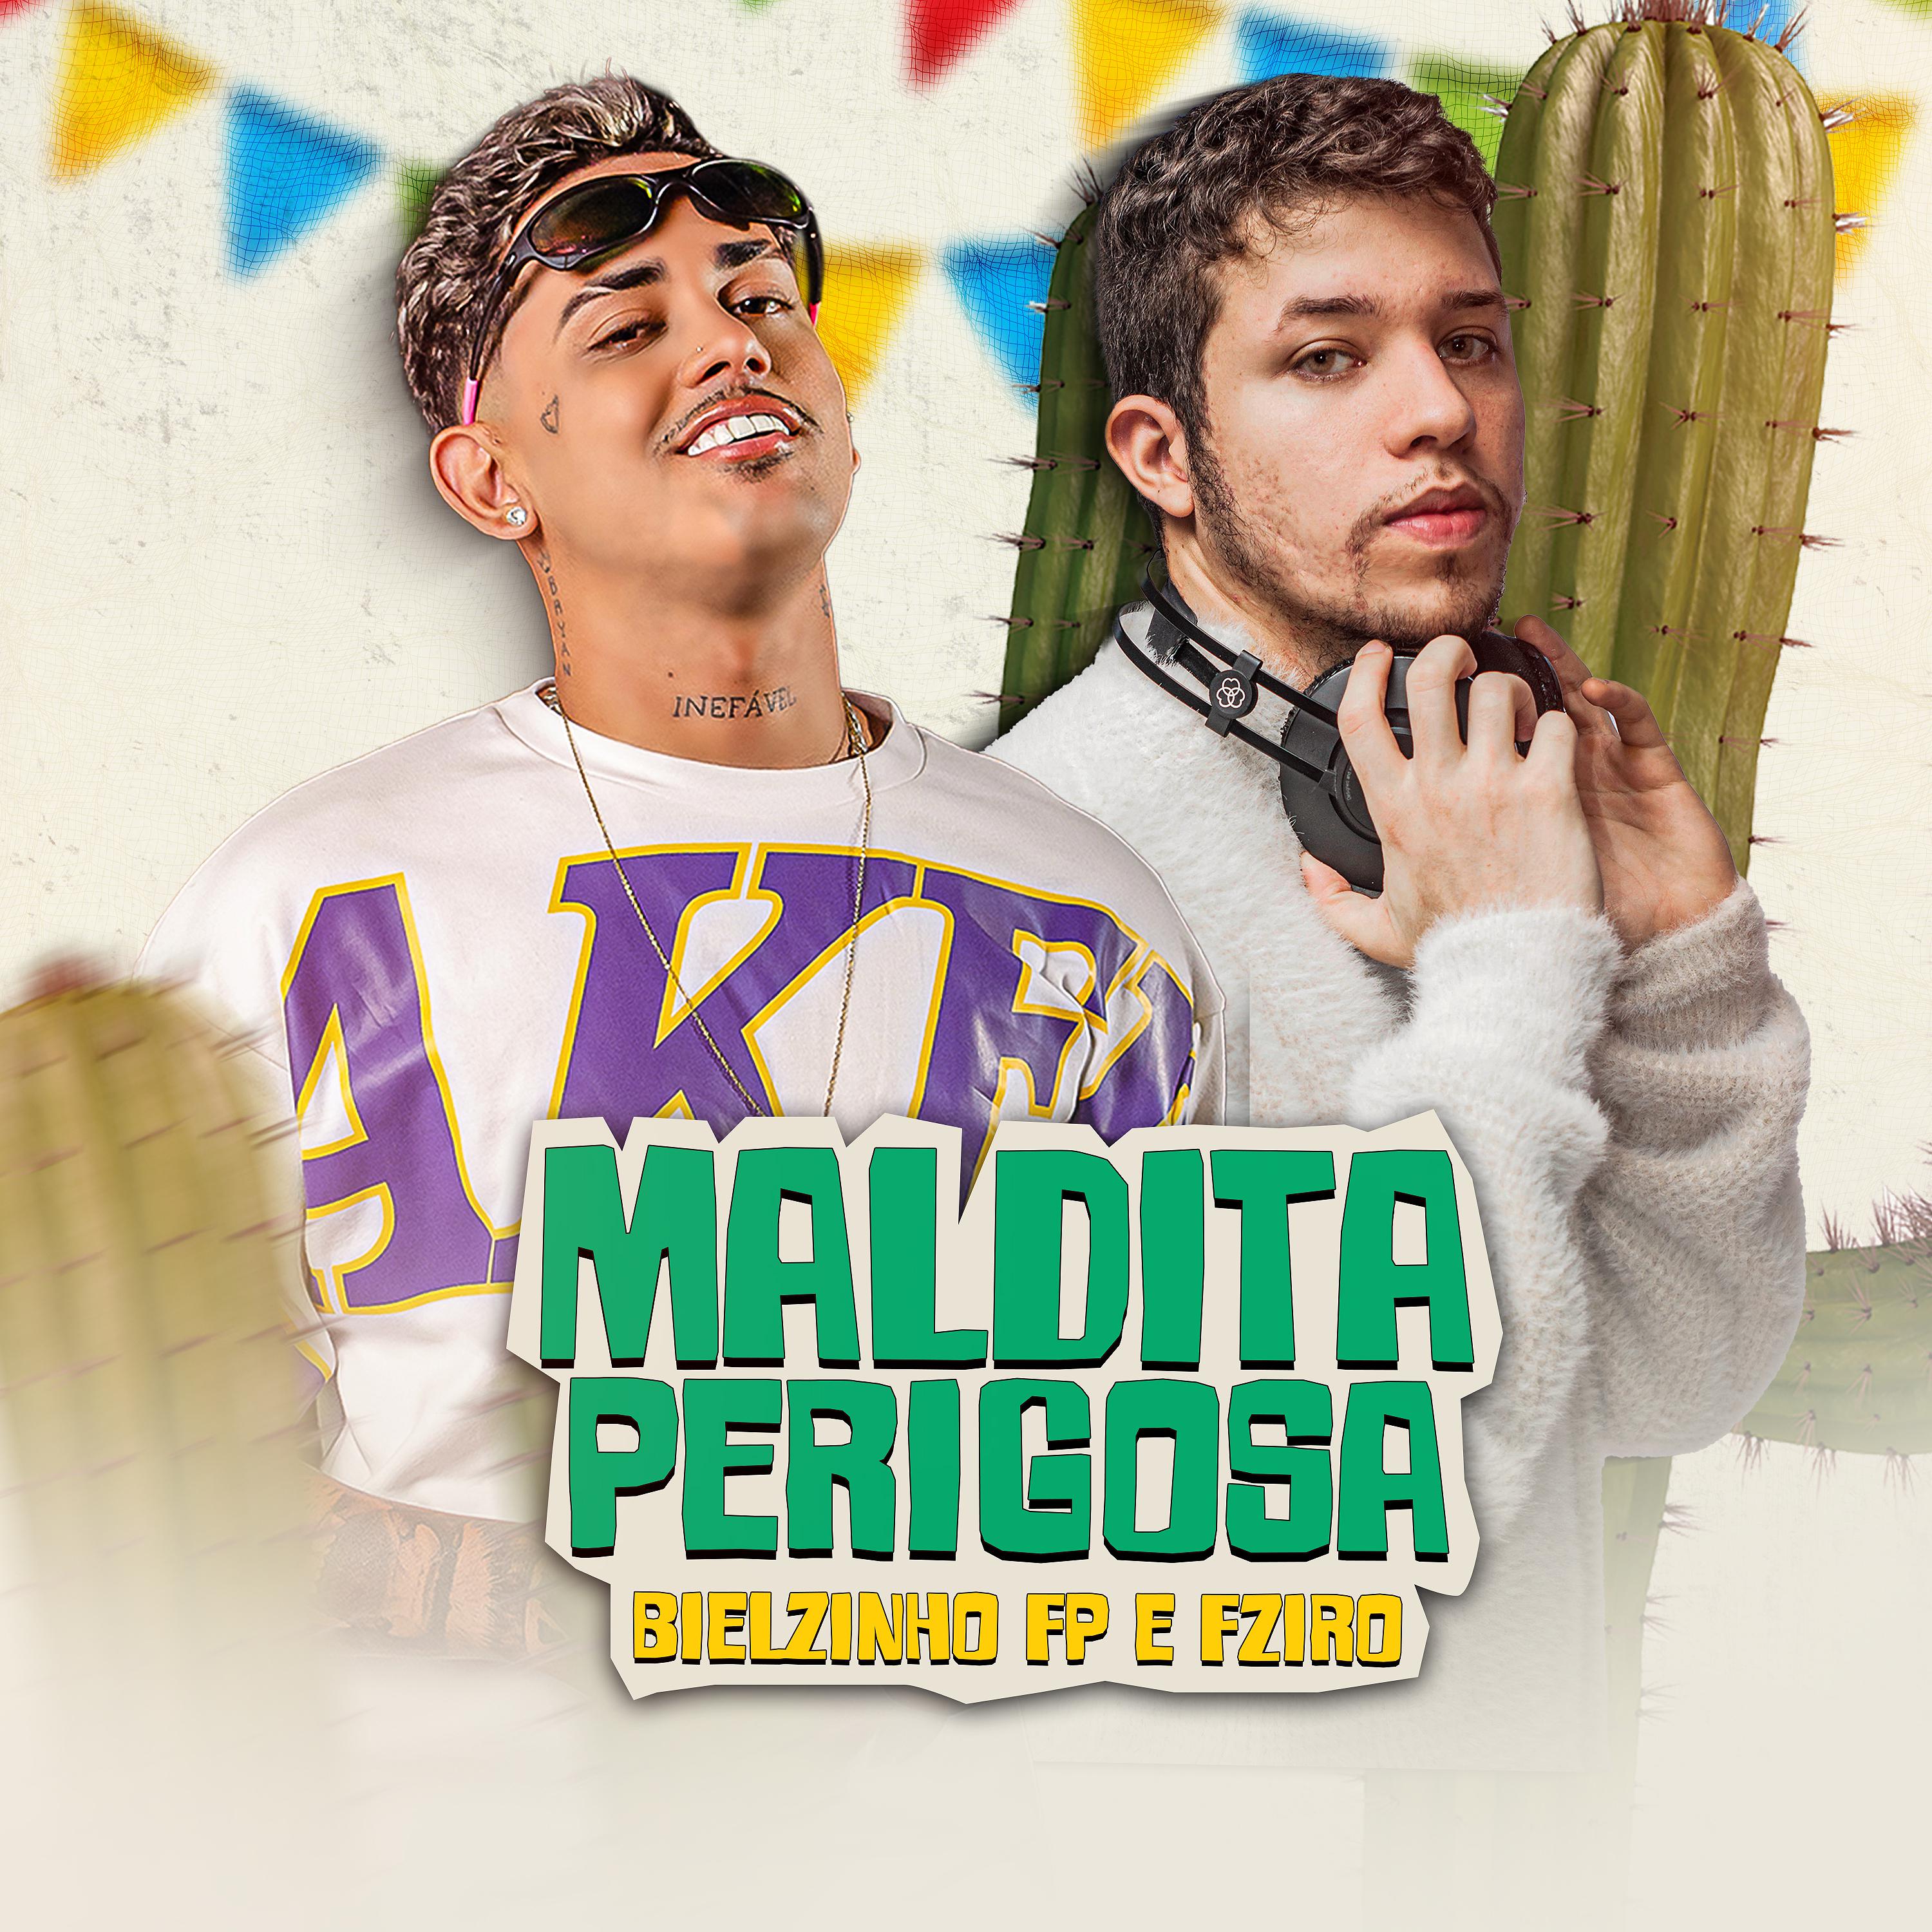 Постер альбома Maldita Perigosa